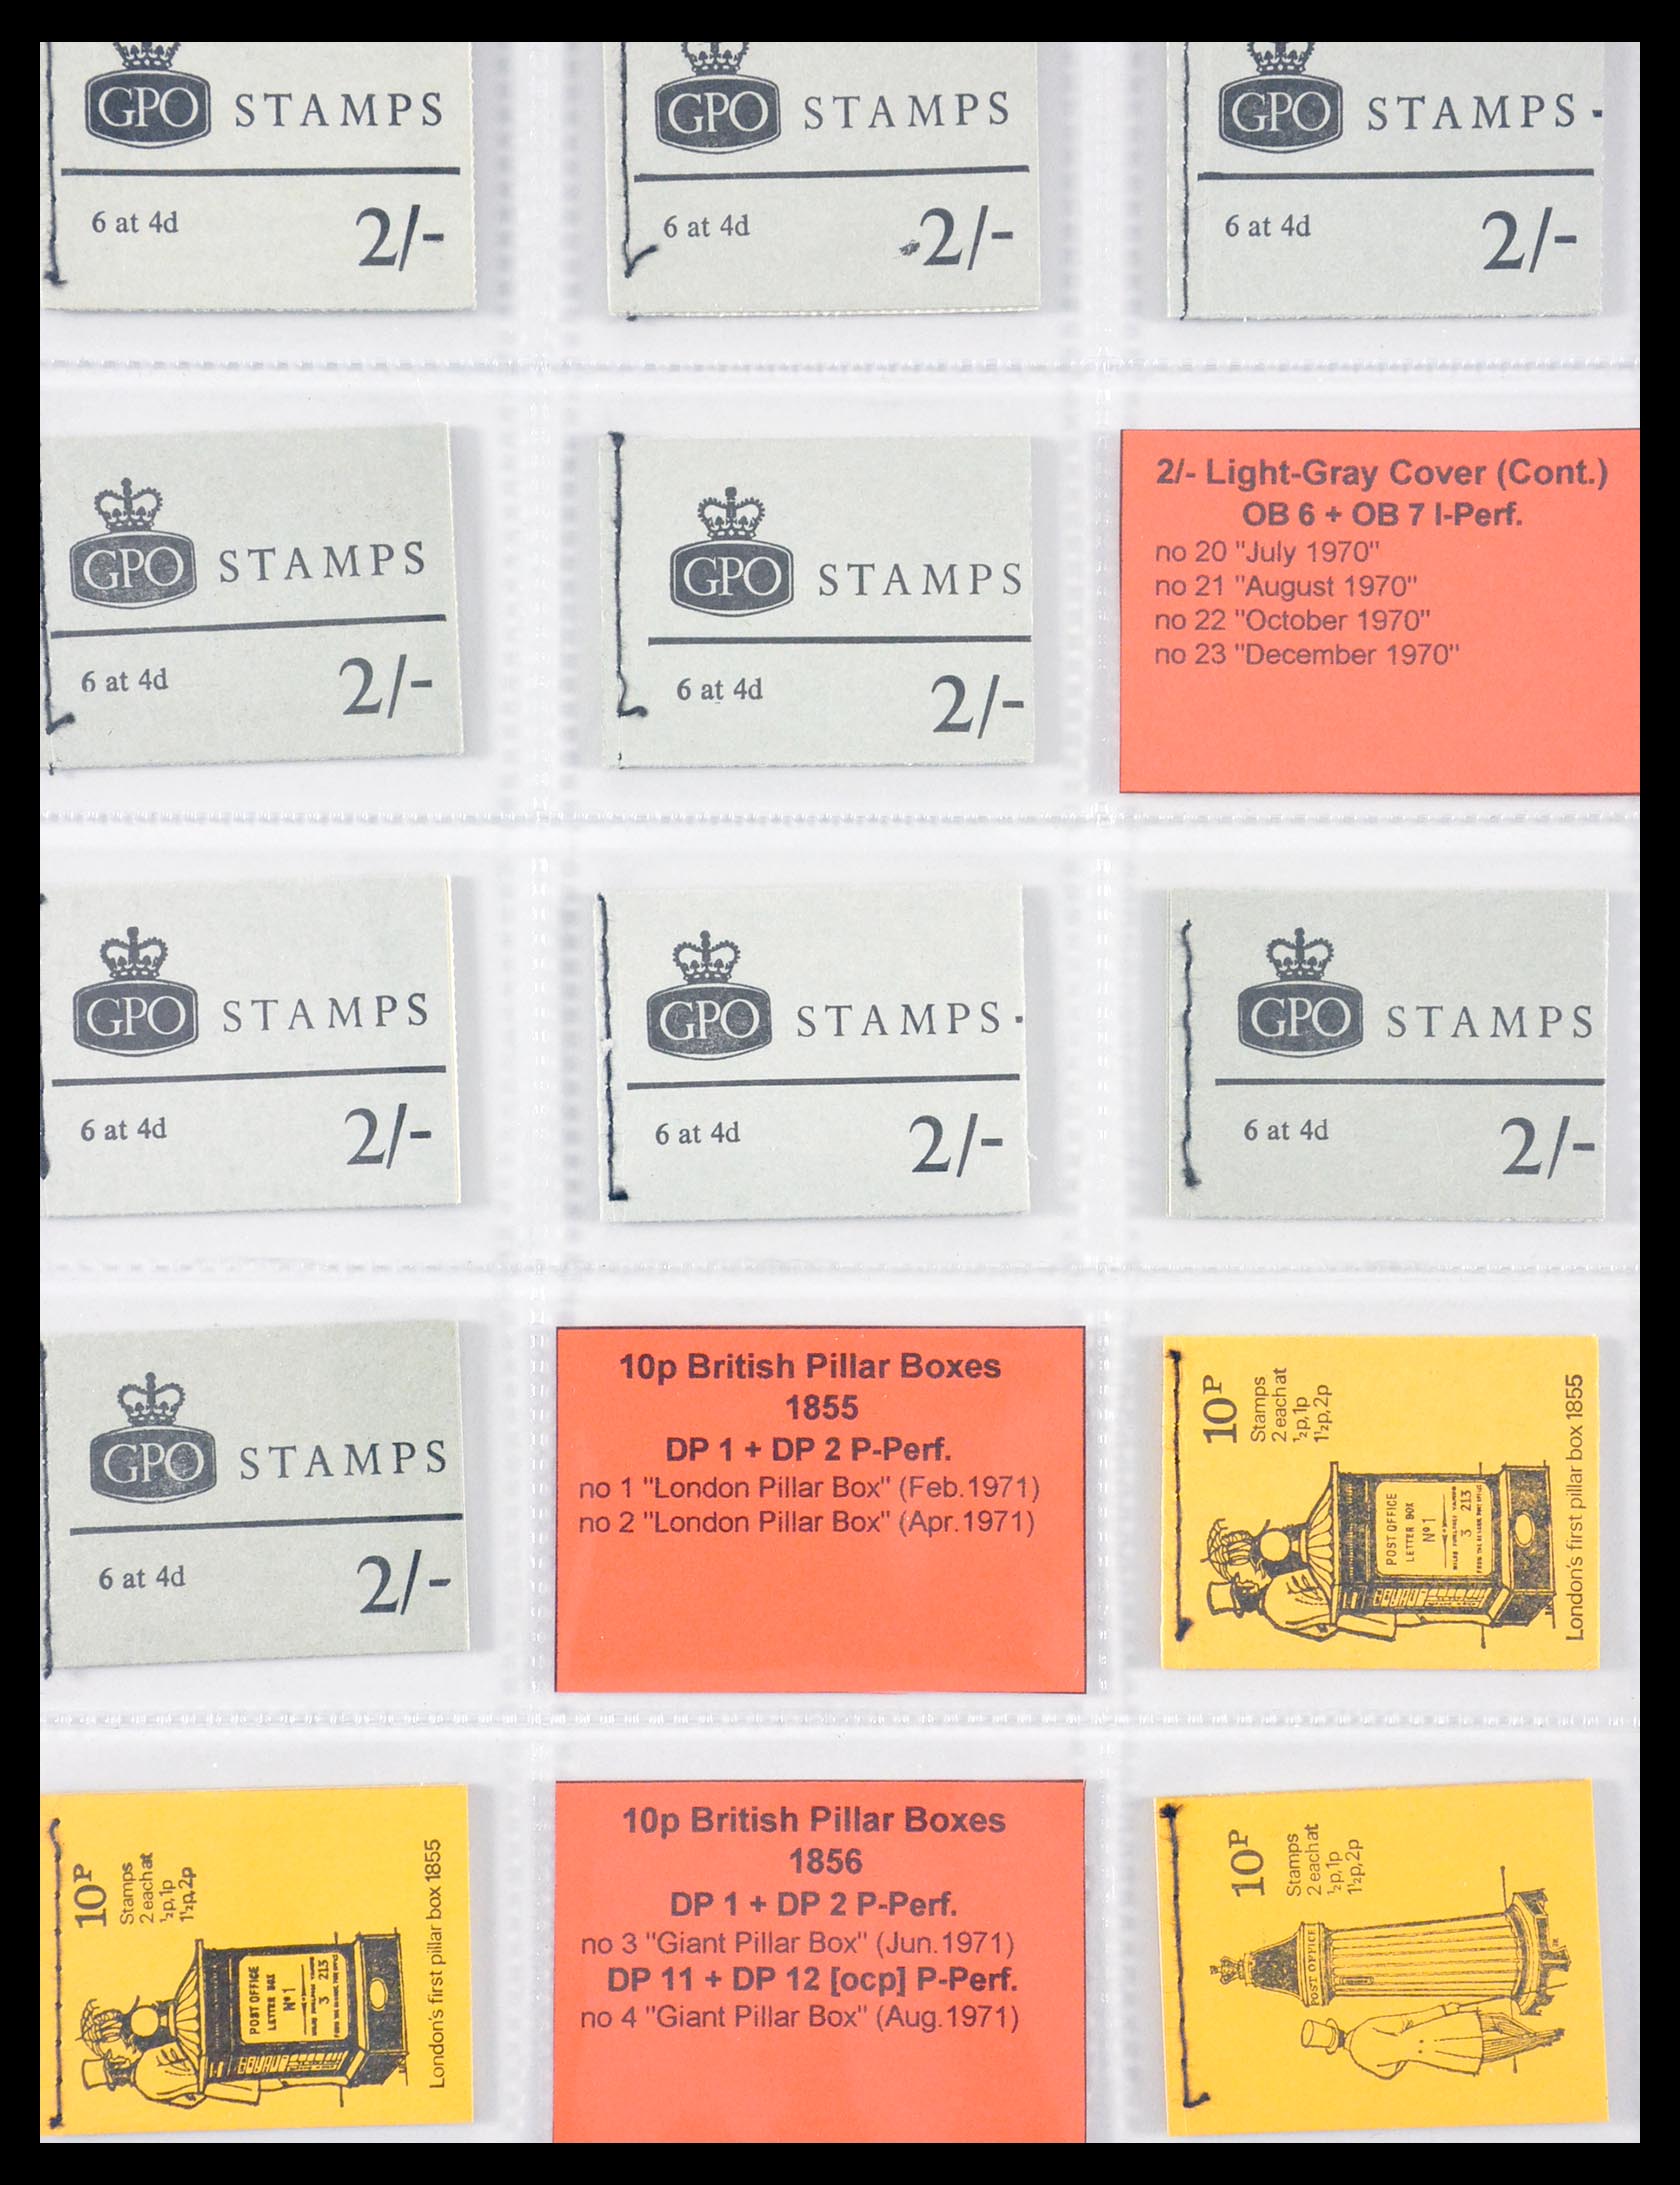 29755 022 - 29755 Engeland postzegelboekjes 1968-1977.